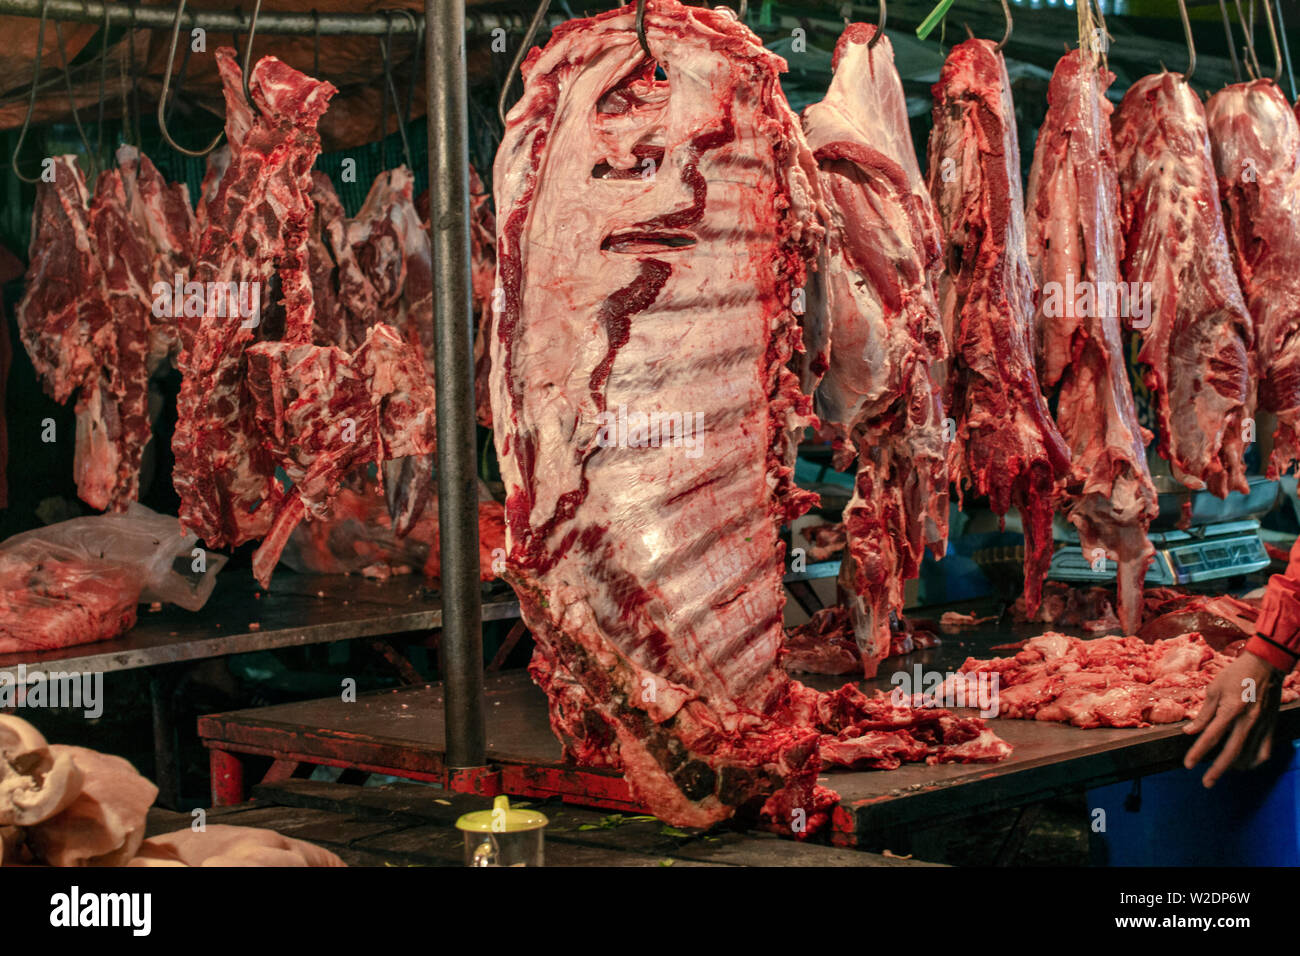 La viande de vache sur le crochet porte-manteau dans un marché traditionnel  Photo Stock - Alamy